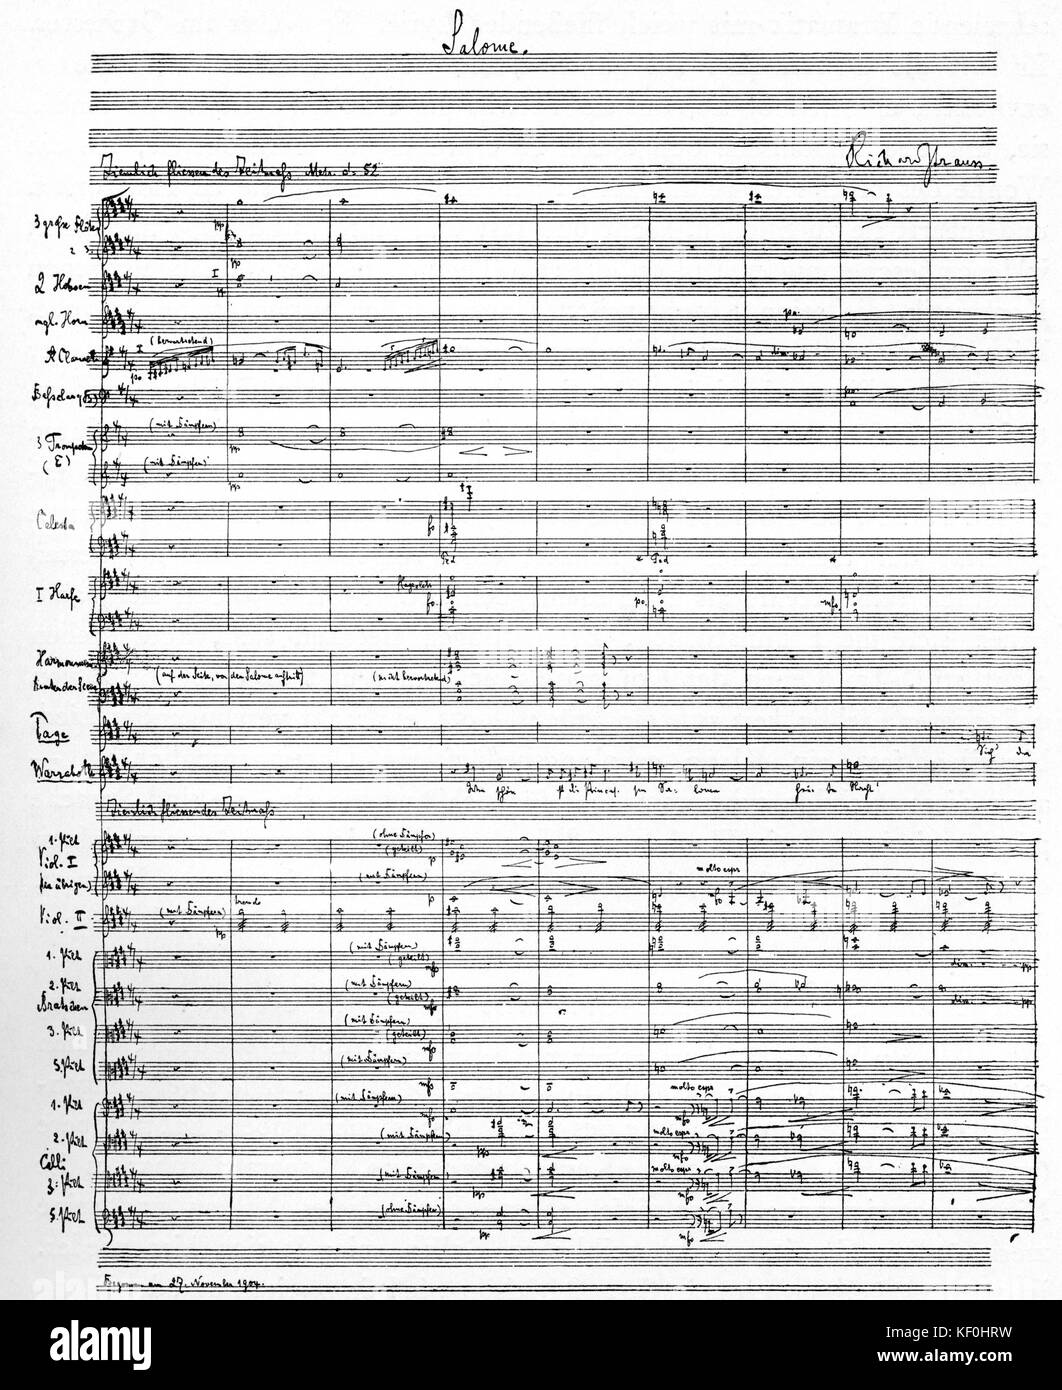 'Salome' par Richard Strauss. Première page de score, écrit à la main. Compositeur allemand RS 11 juin 1864 - 8 septembre 1949. Banque D'Images